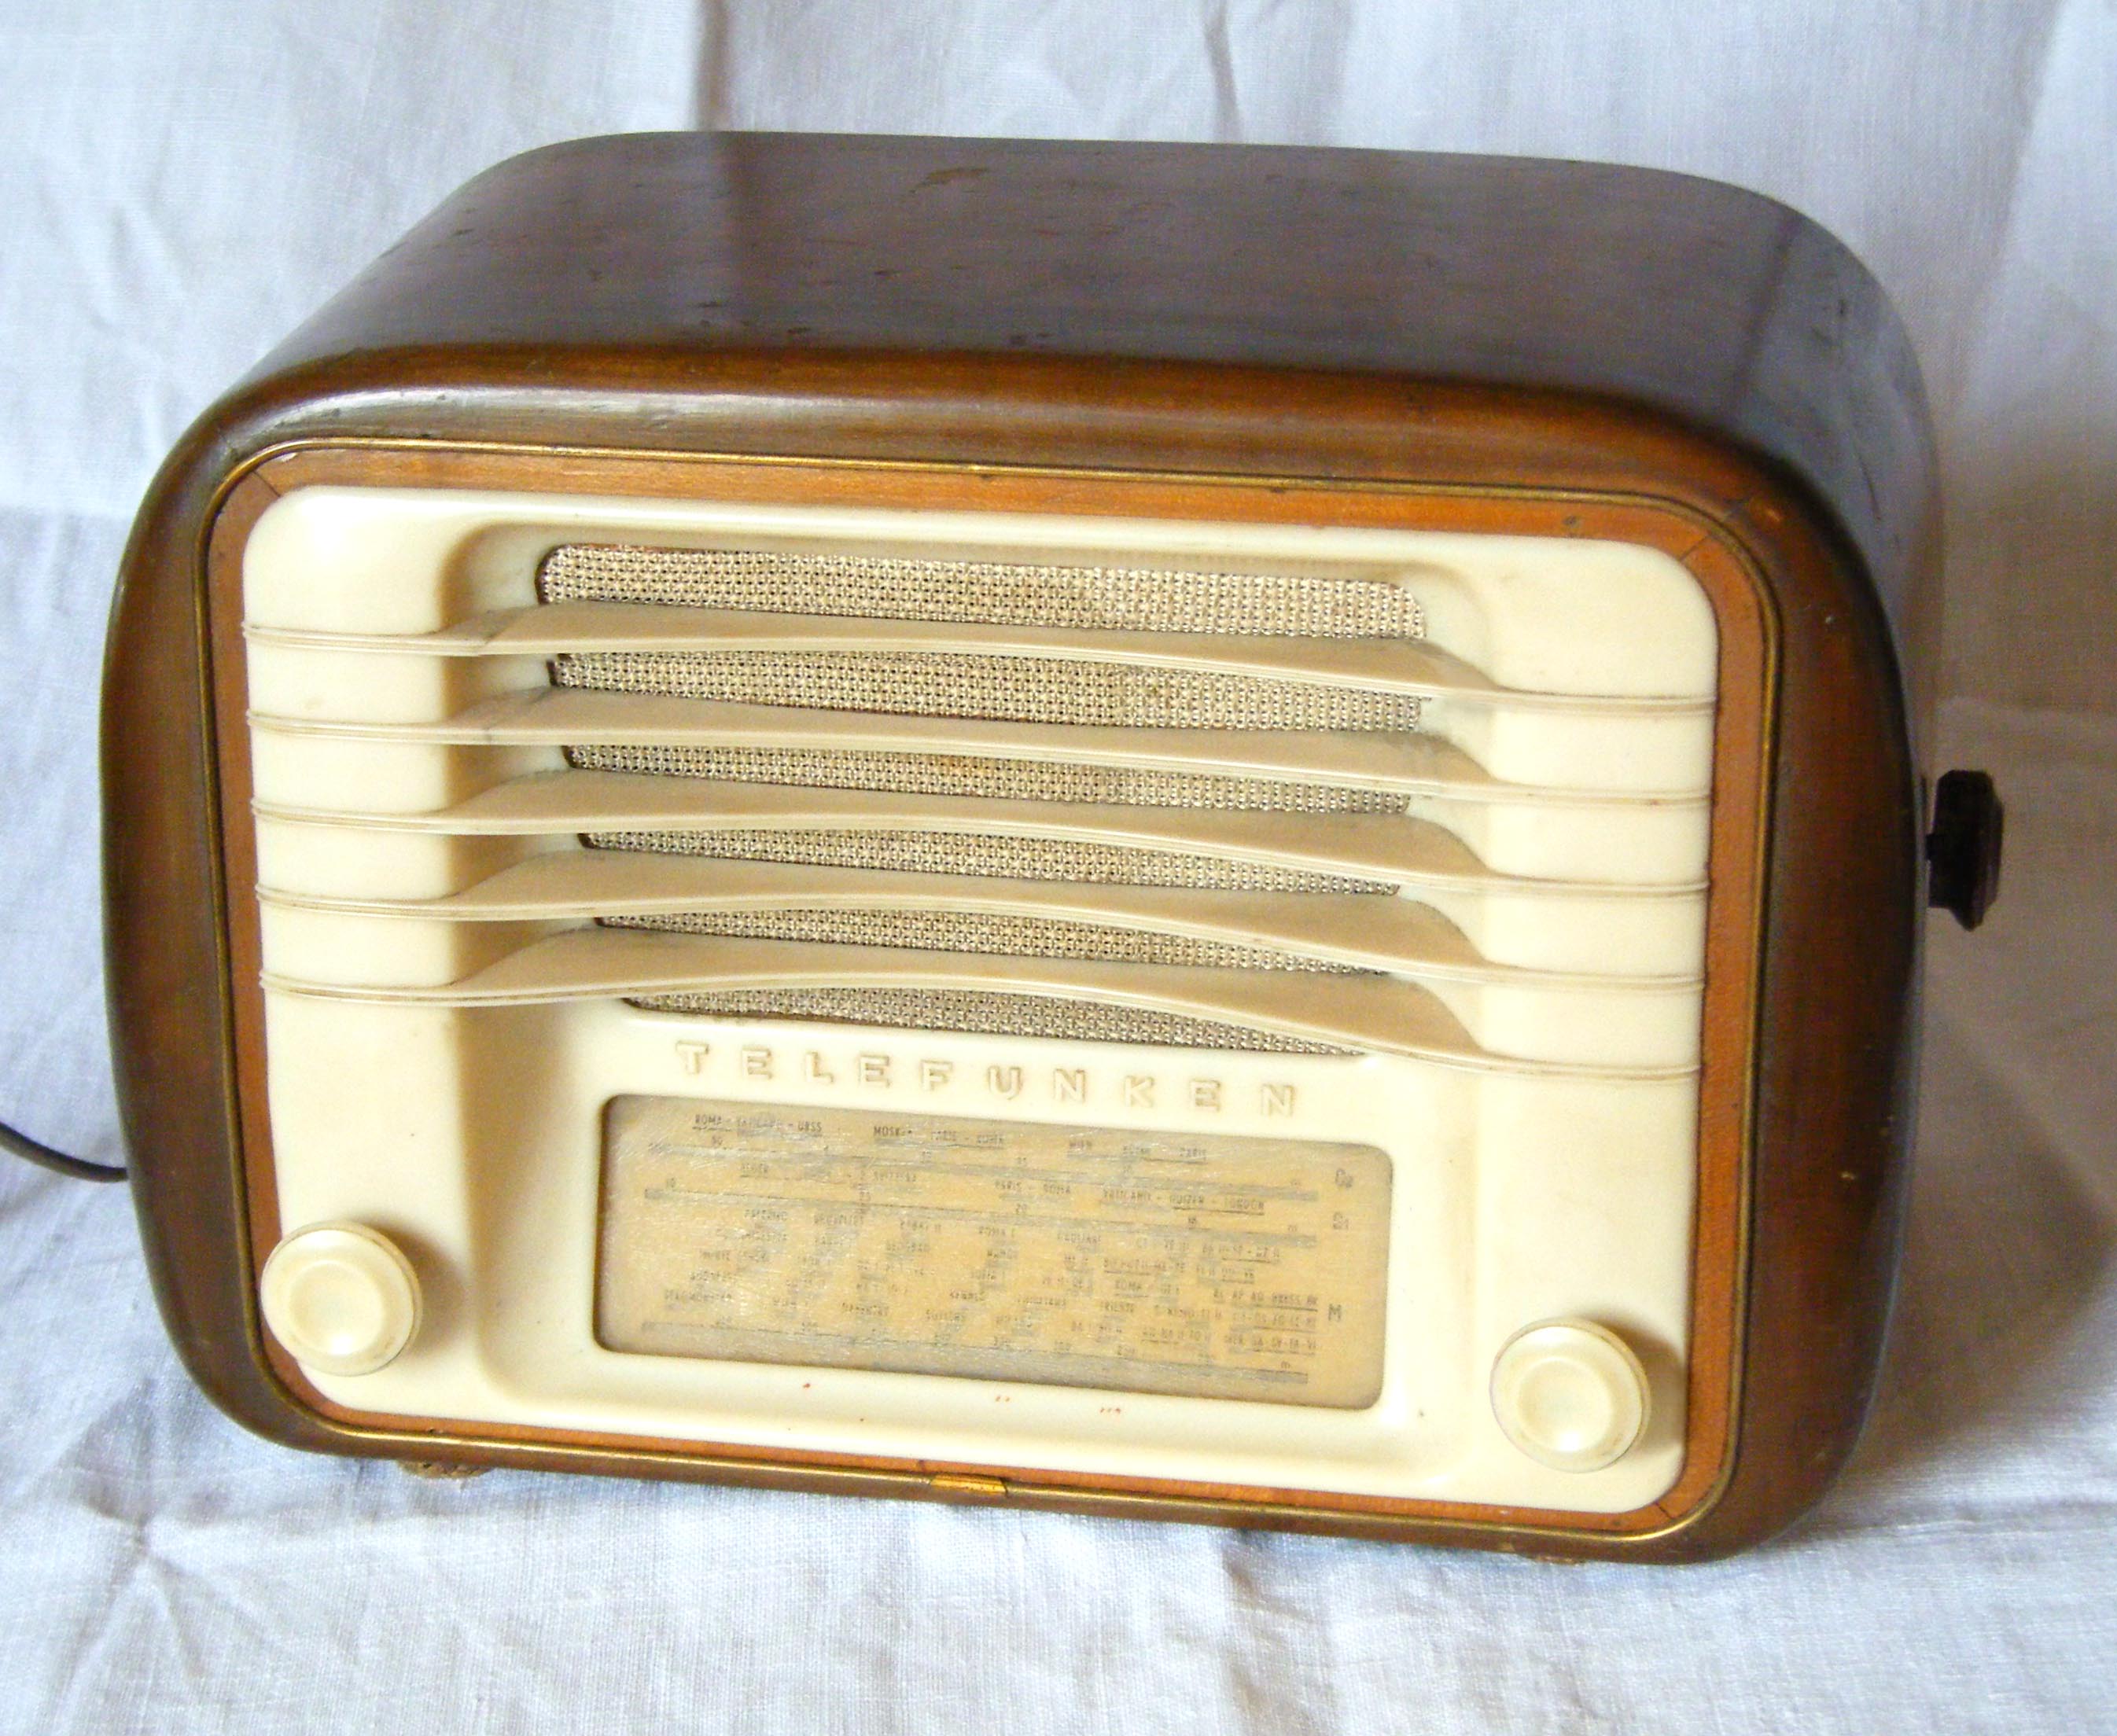 Radio (apparecchio) - Wikipedia